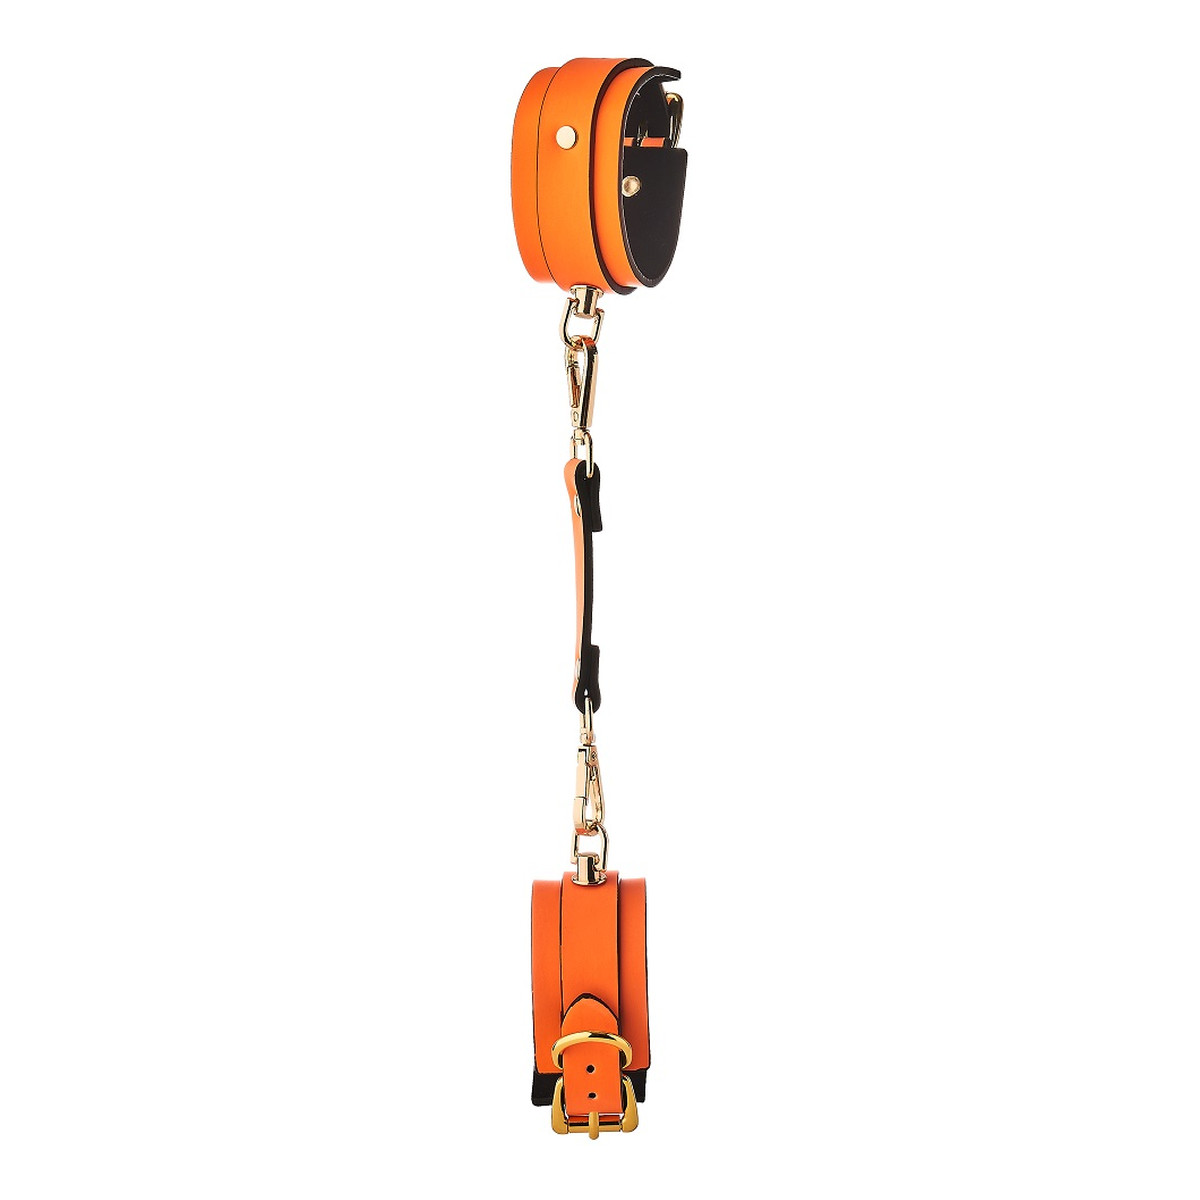 Dream Toys Radiant handcuff kajdanki świecące w ciemności orange